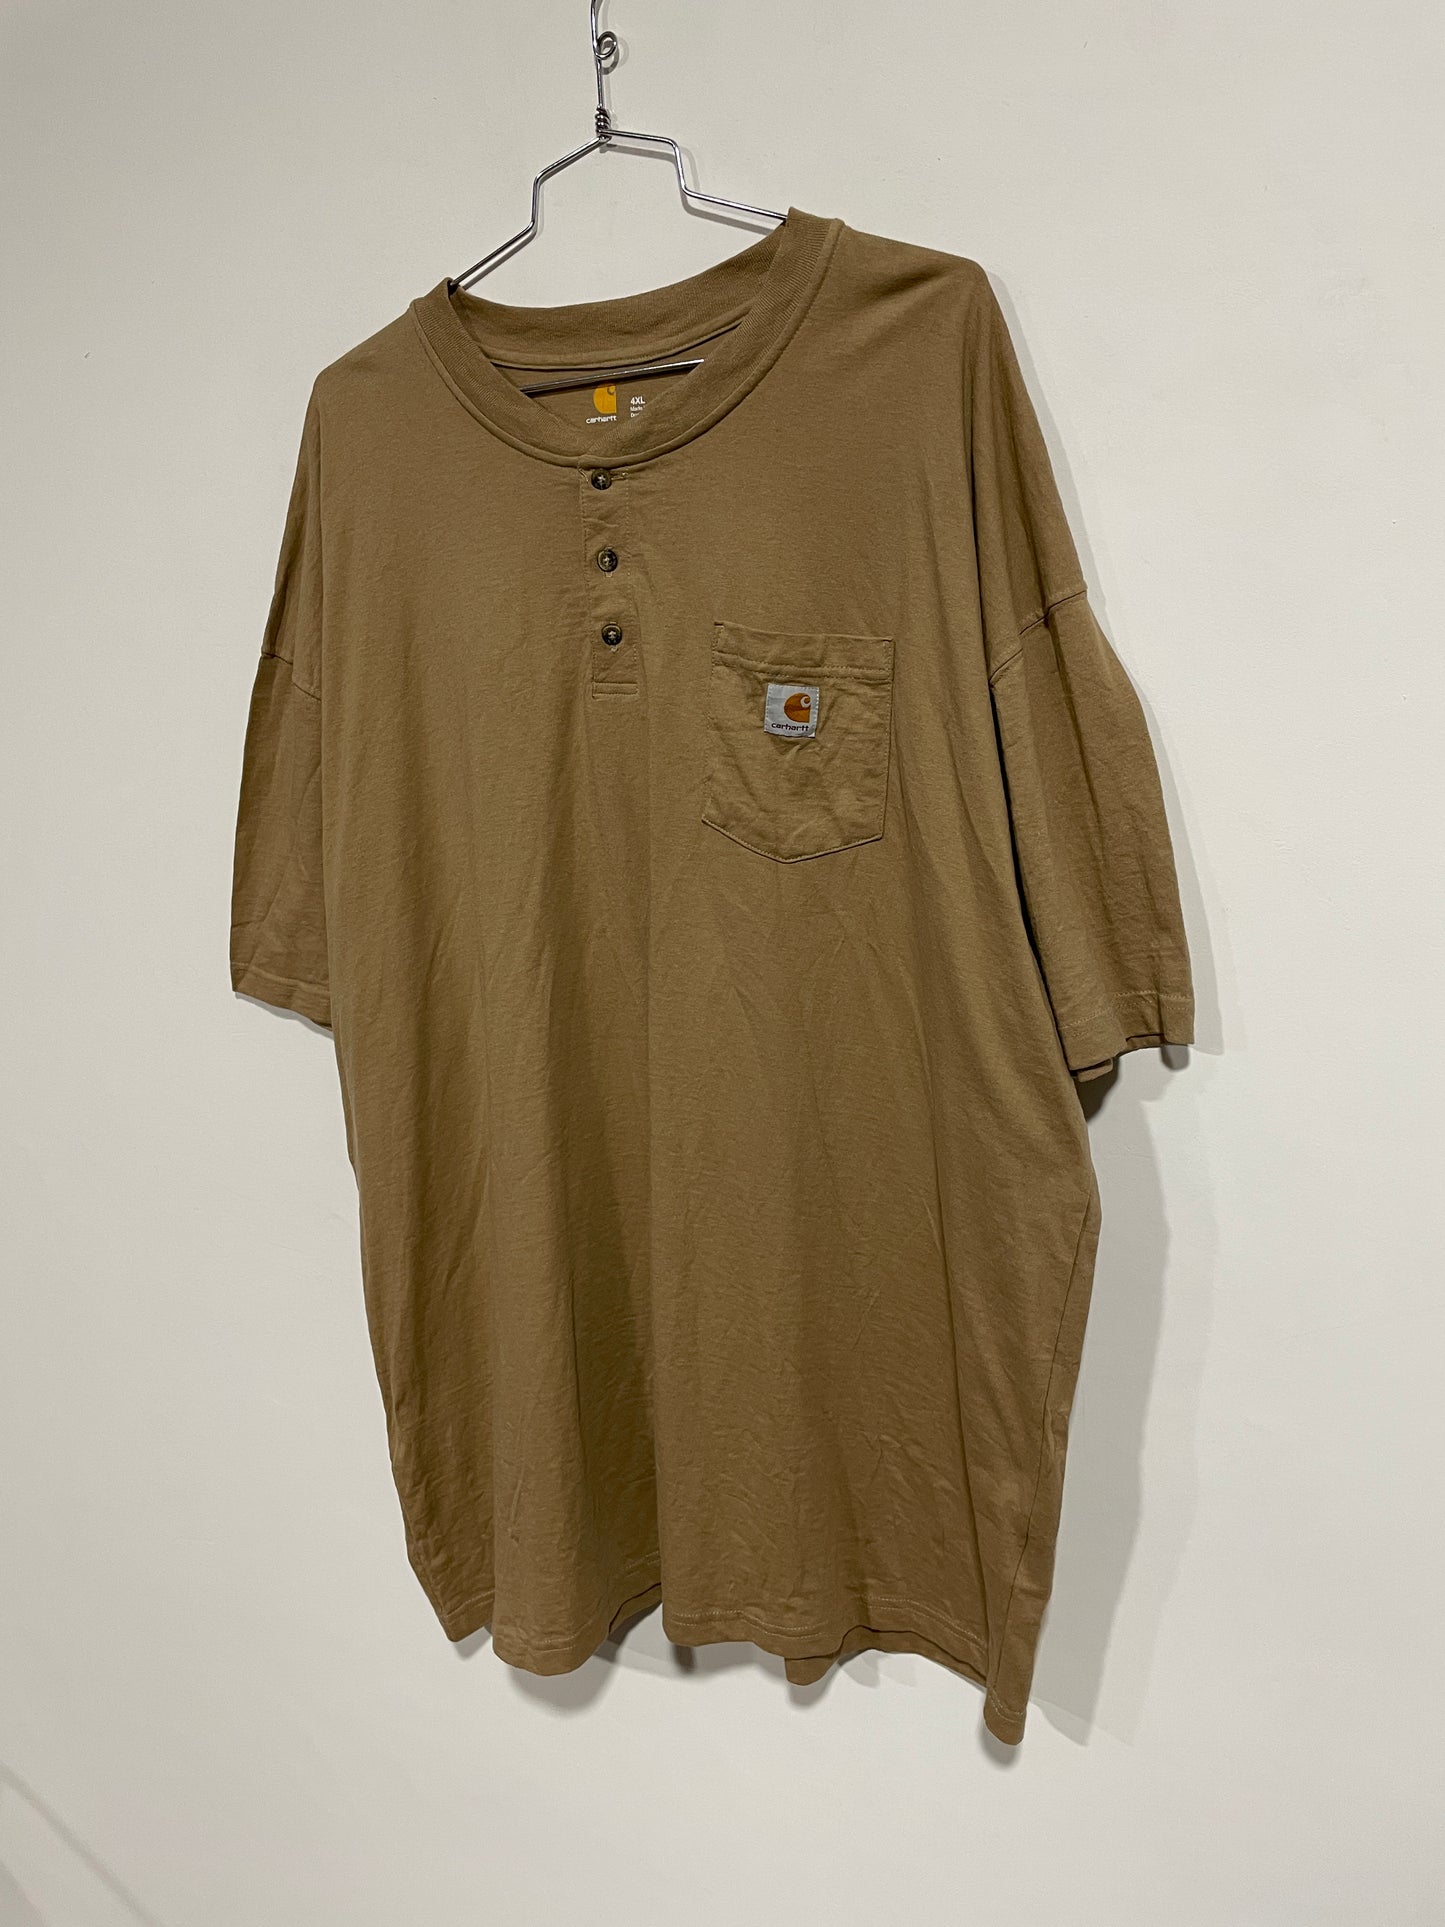 T shirt Carhartt USA (MR020)